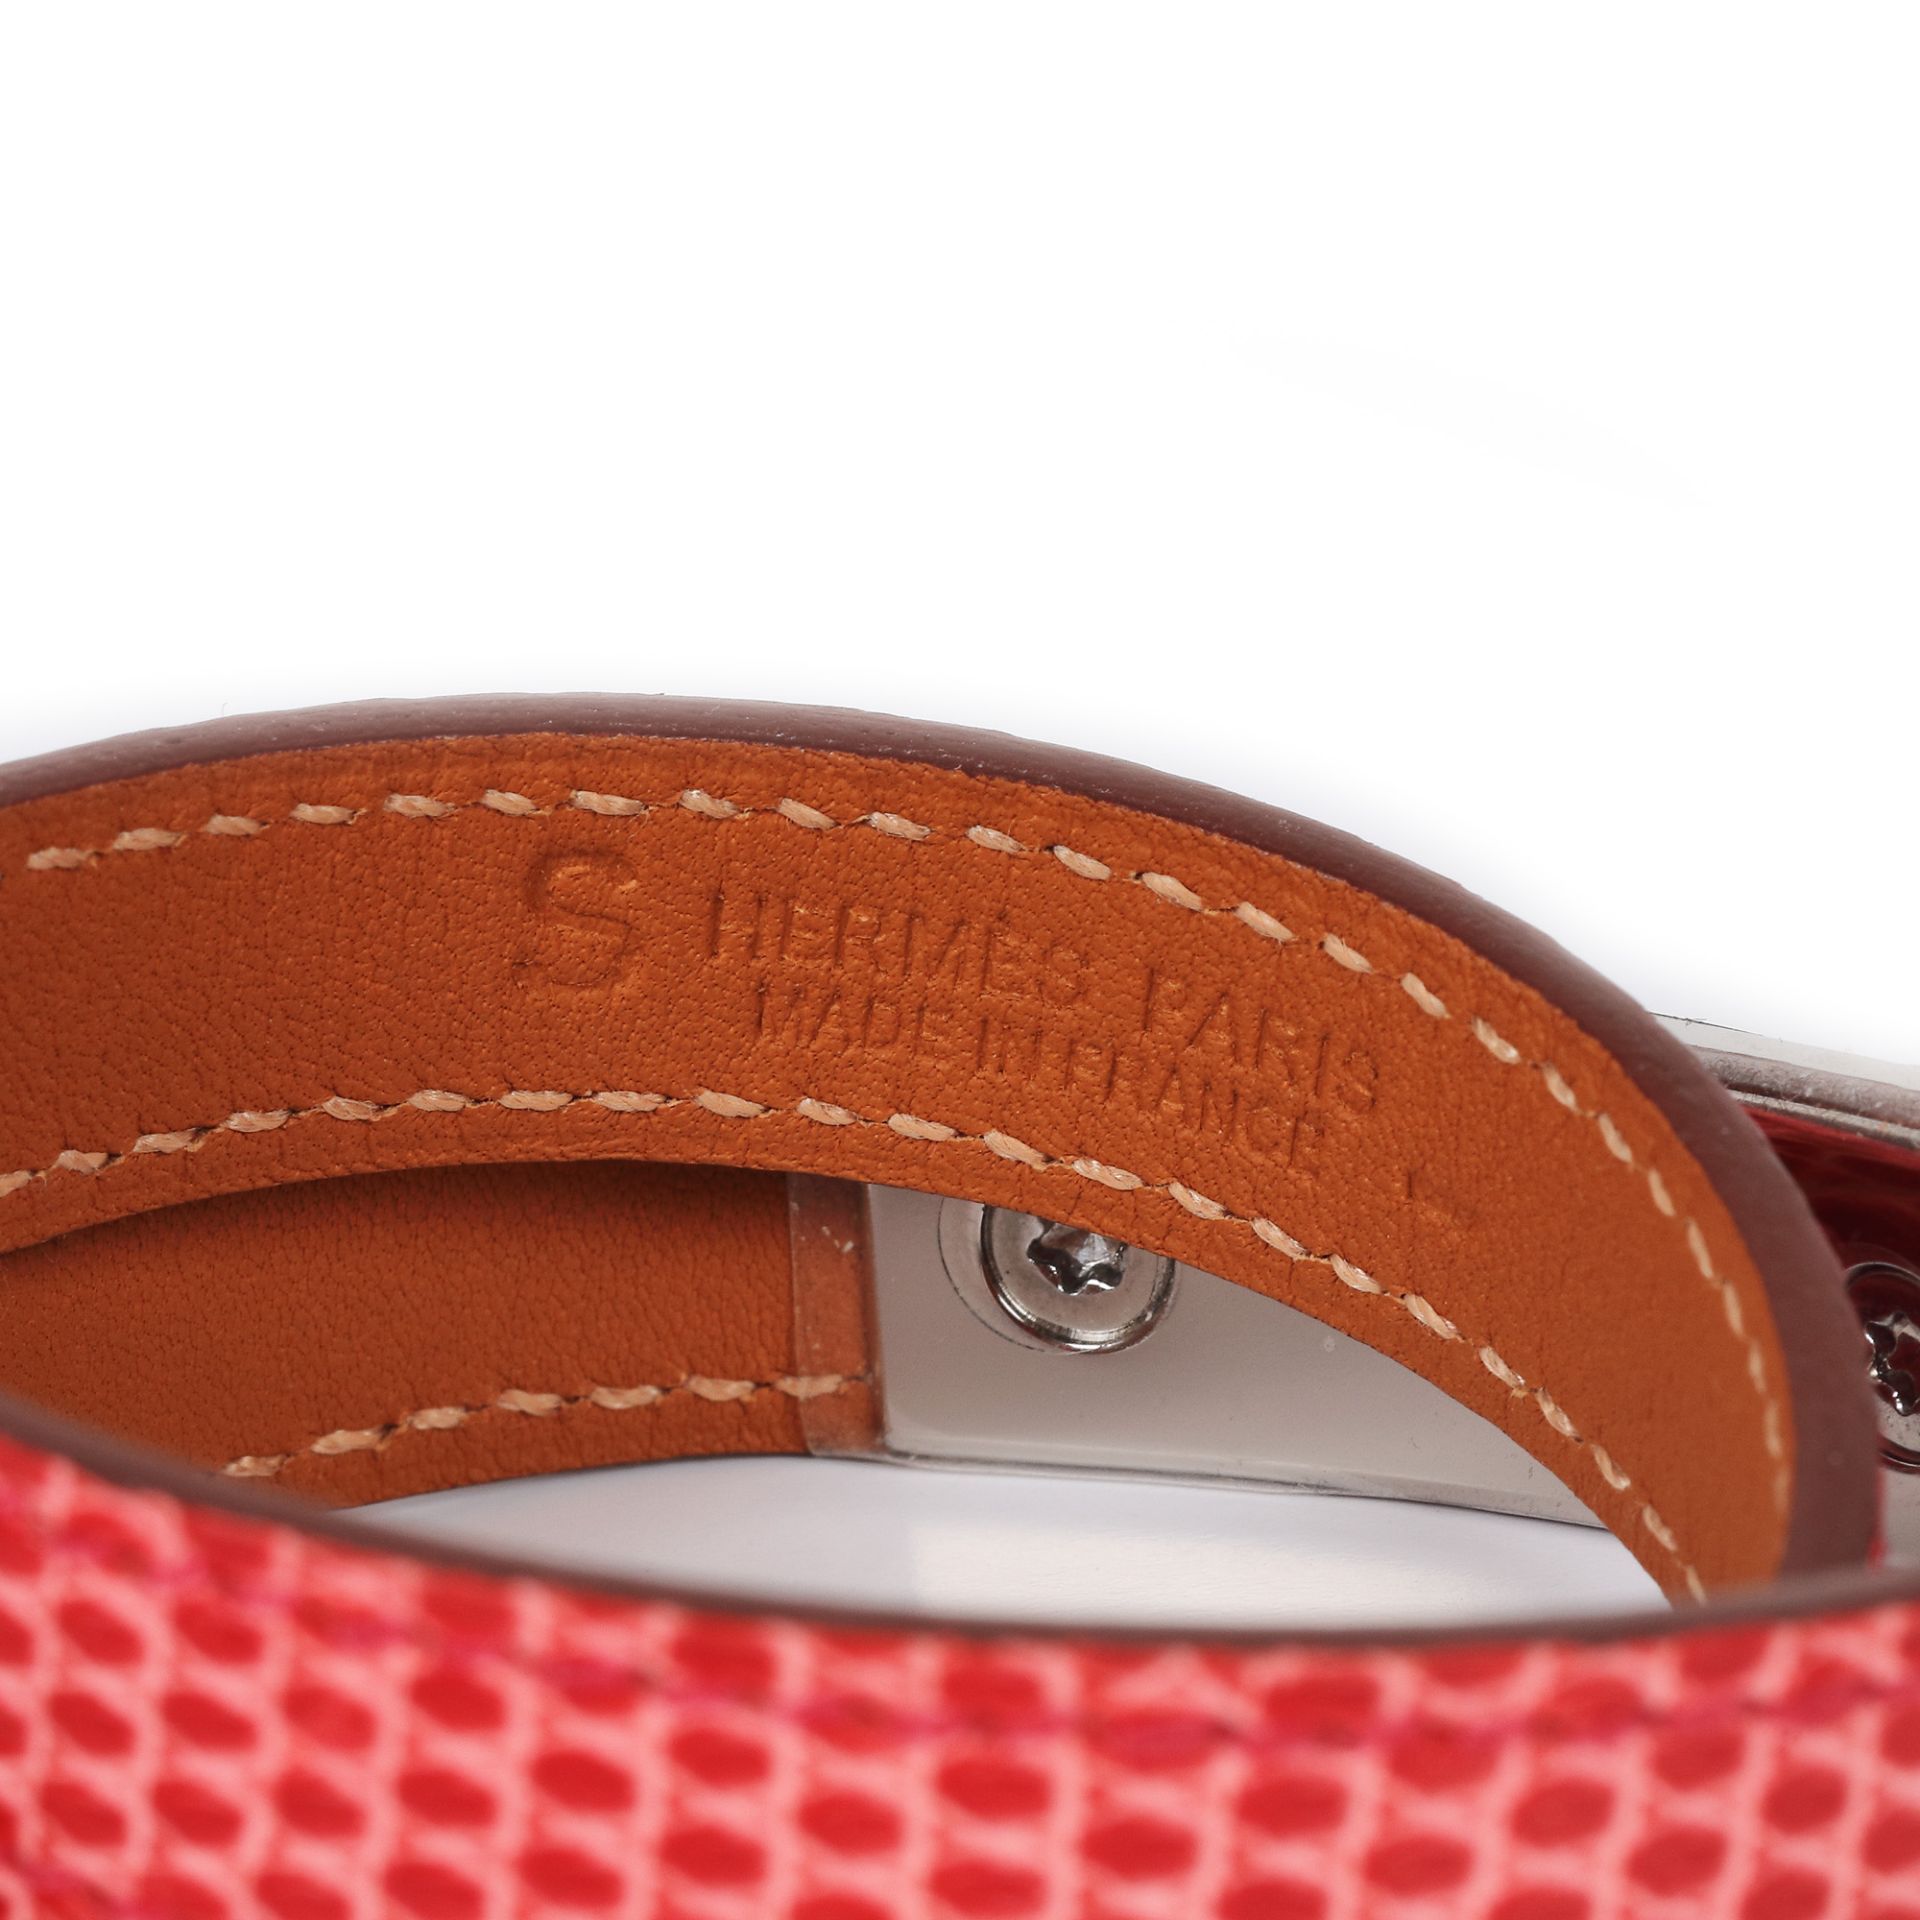 Hermès Rivale Double Tour bracelet, lizard leather, original box - Image 3 of 3